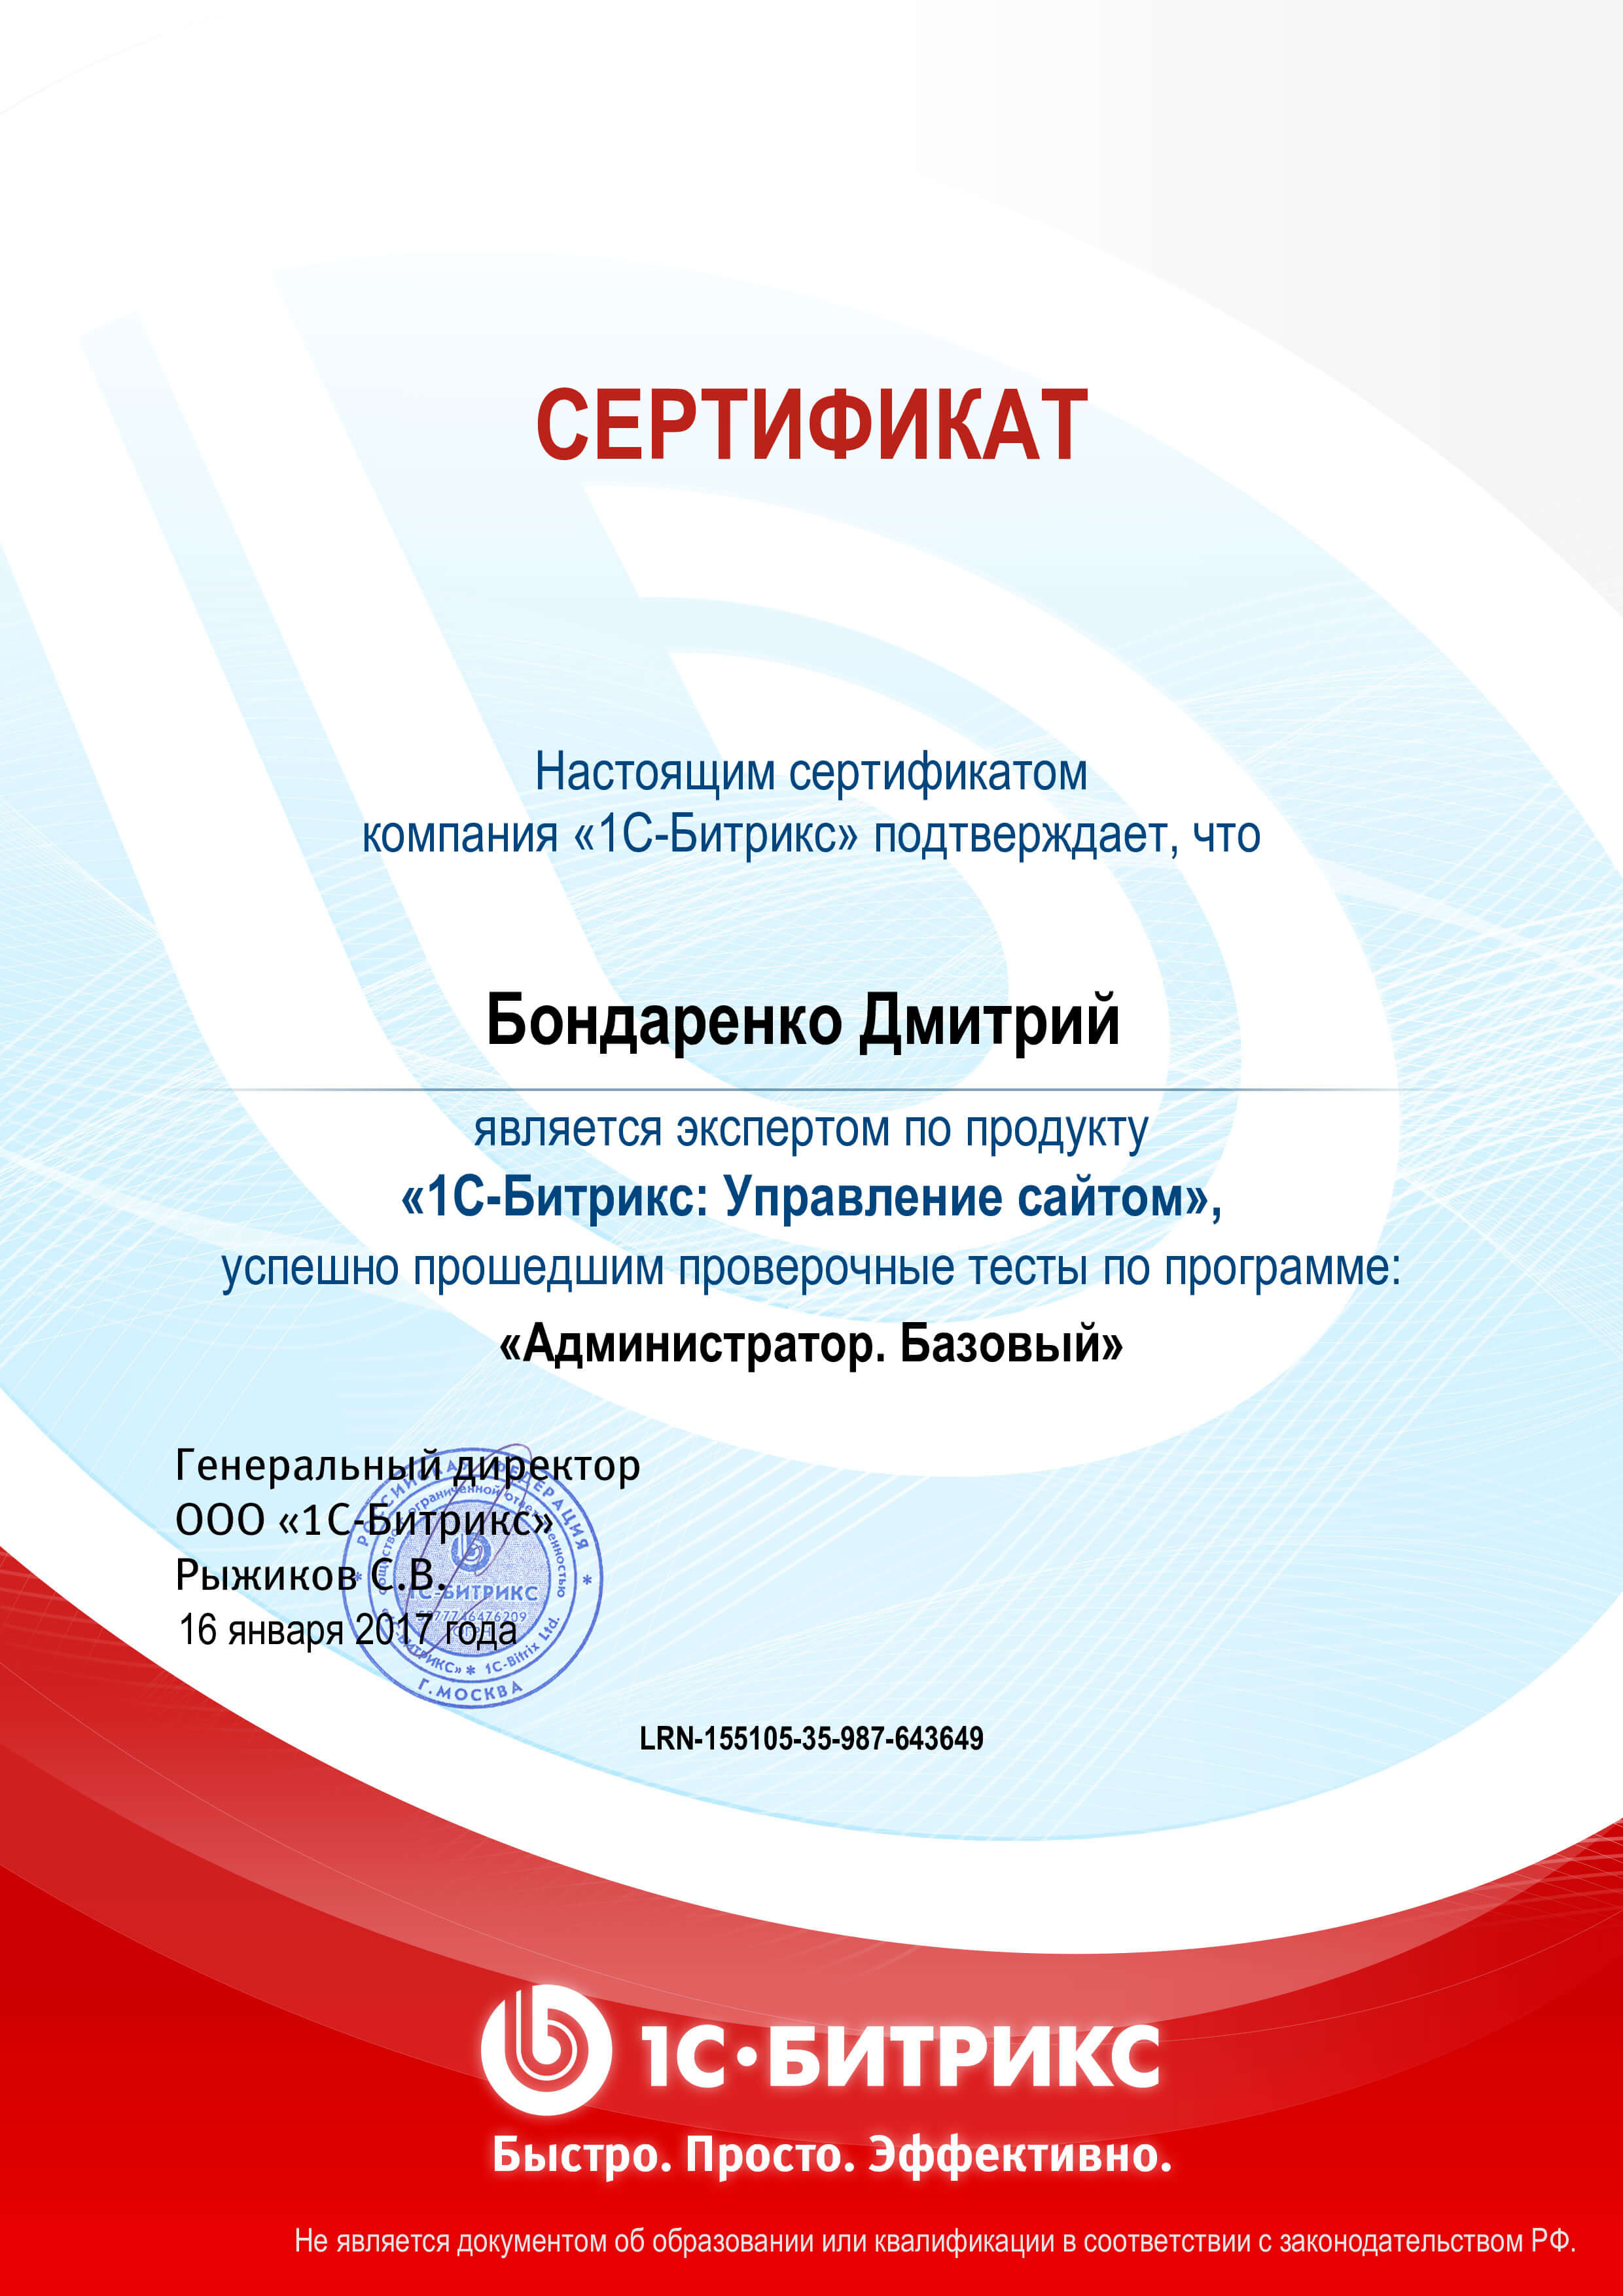 Сертификат “Базовый 1С-Битрикс”